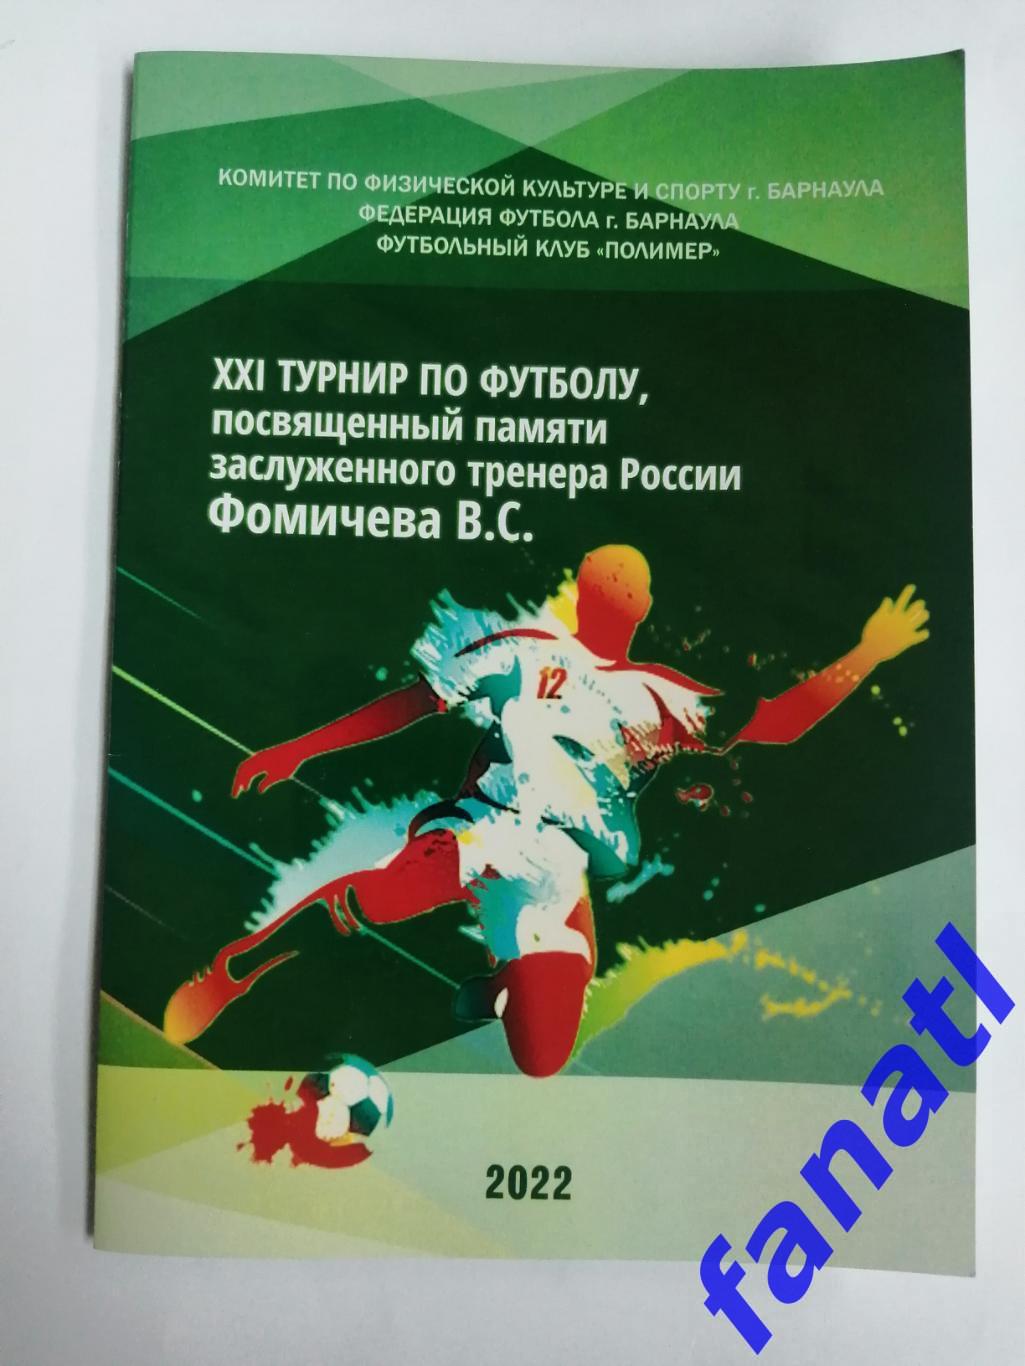 Турнир памяти Фомичева В. С. 13-19 апреля 2022 г г. Барнаул